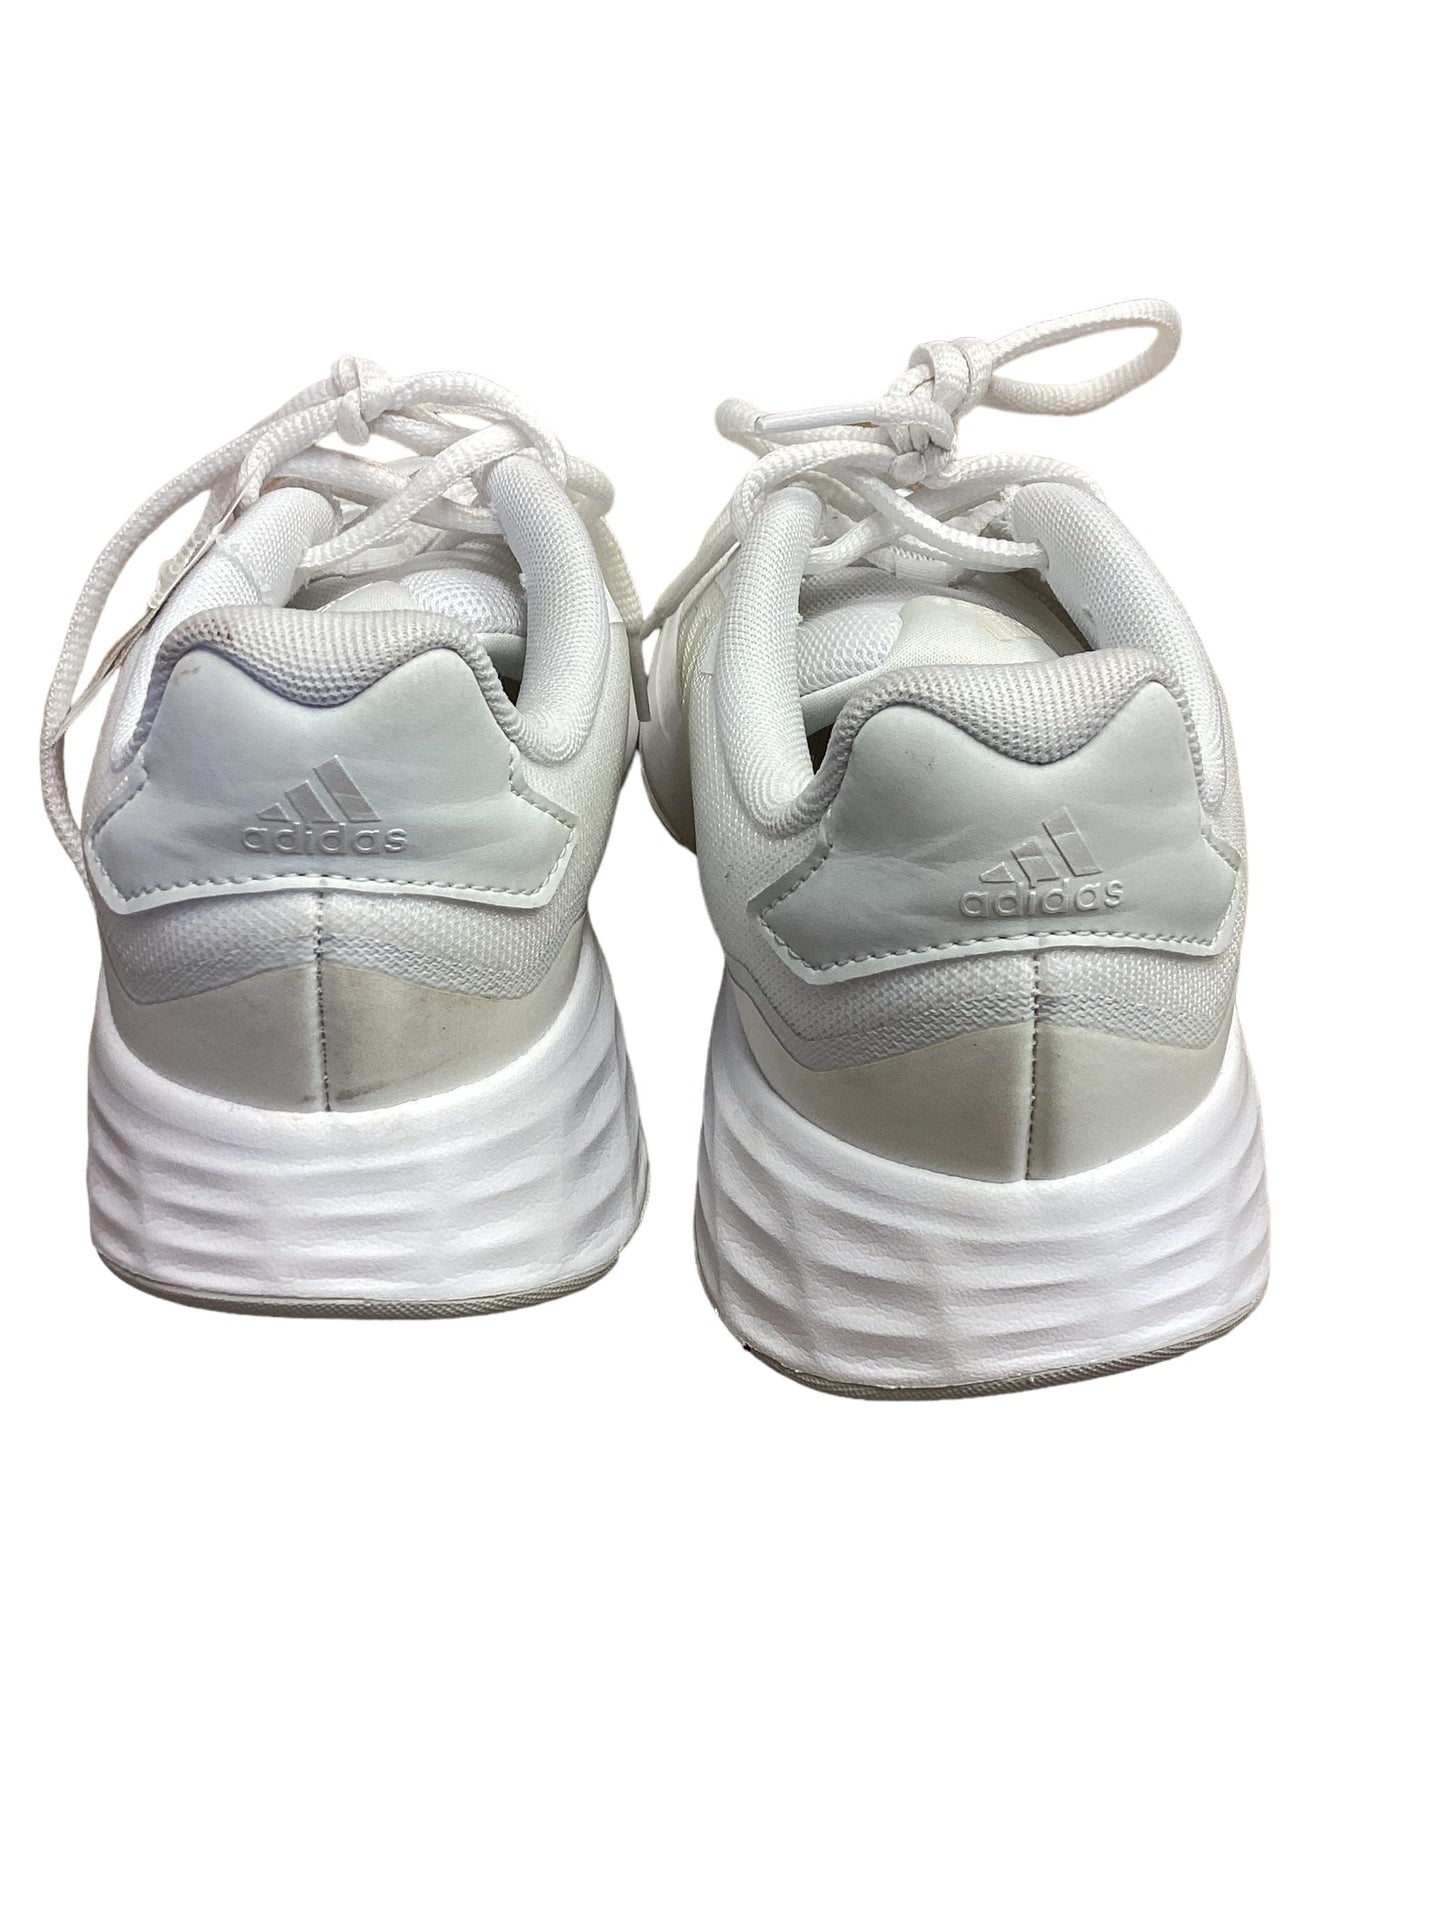 White Shoes Athletic Adidas, Size 7.5